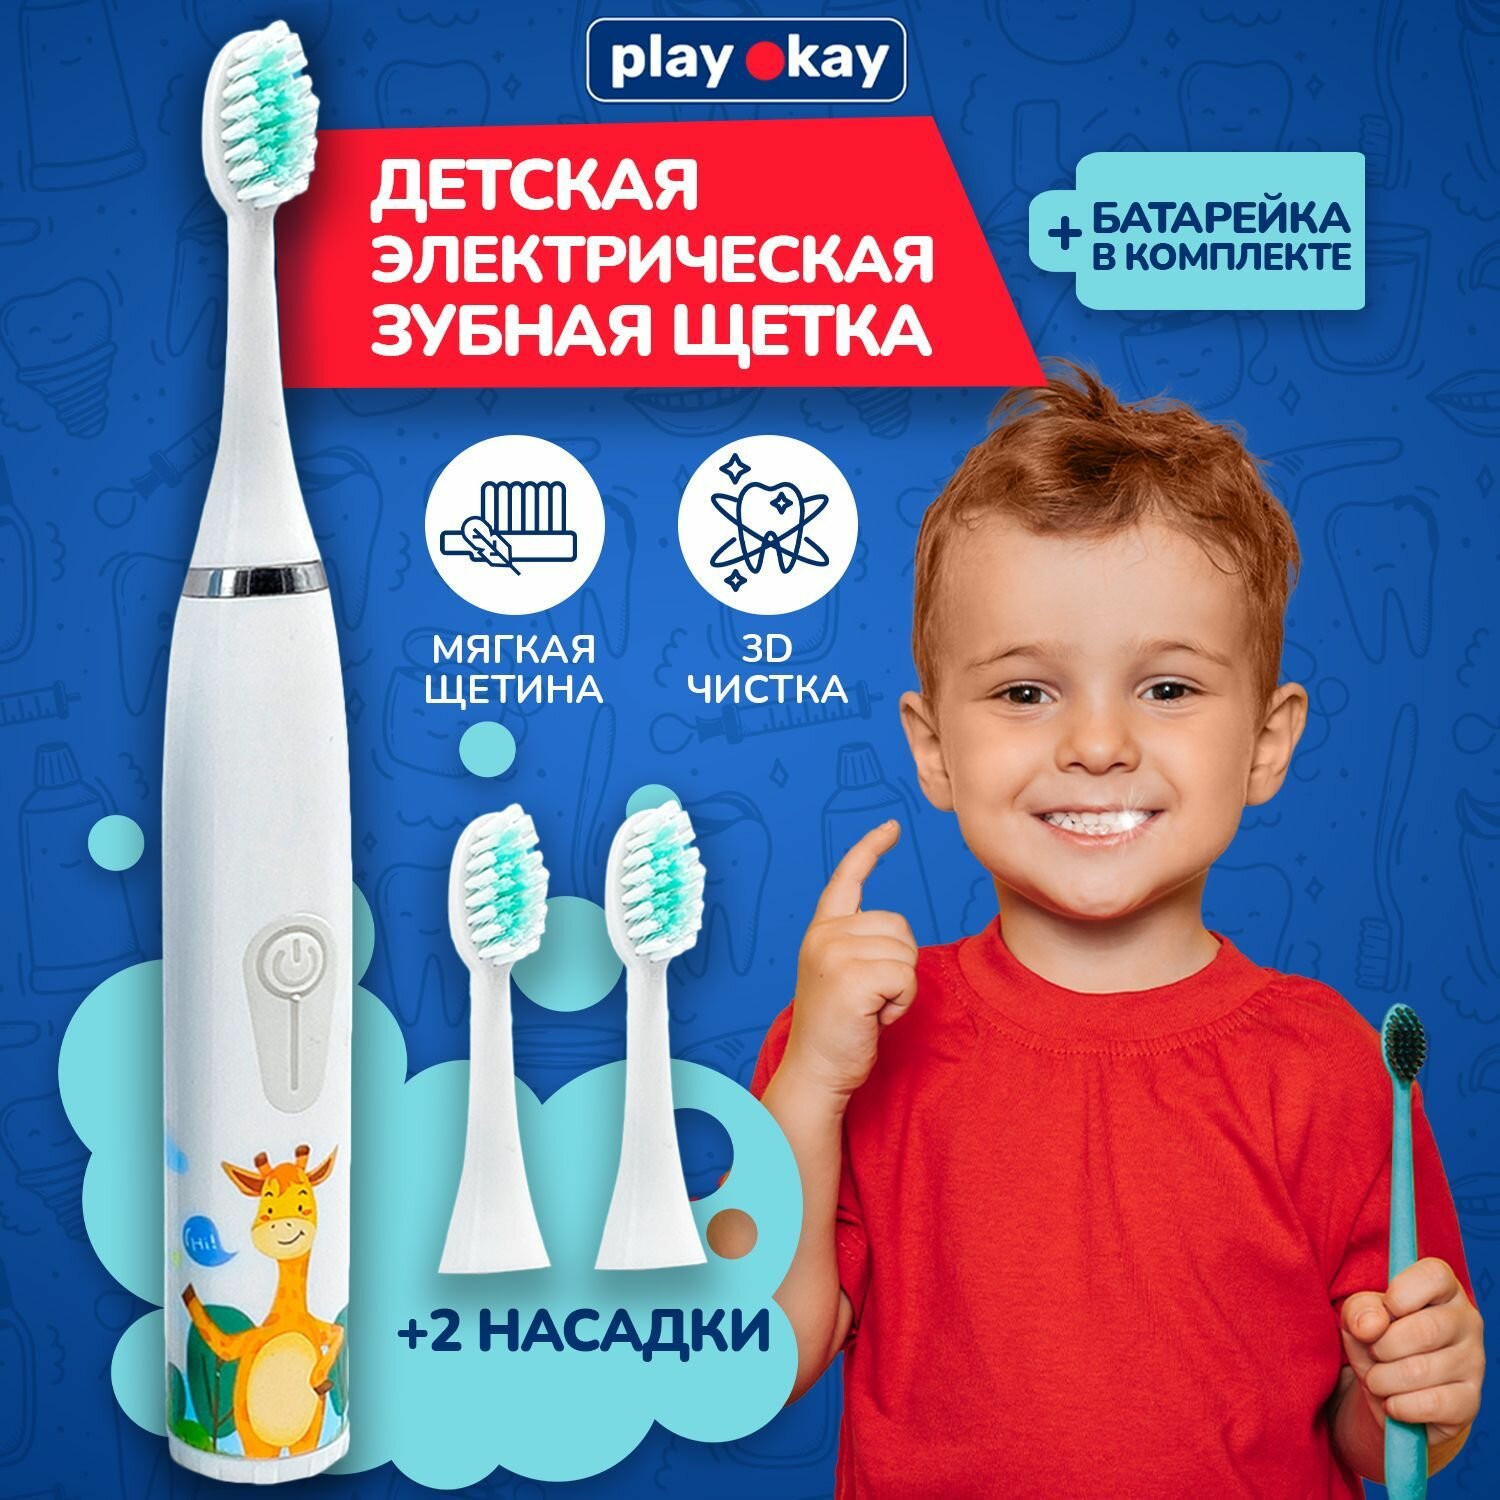 Play Okay Электрическая зубная щетка детская с насадками на батарейках